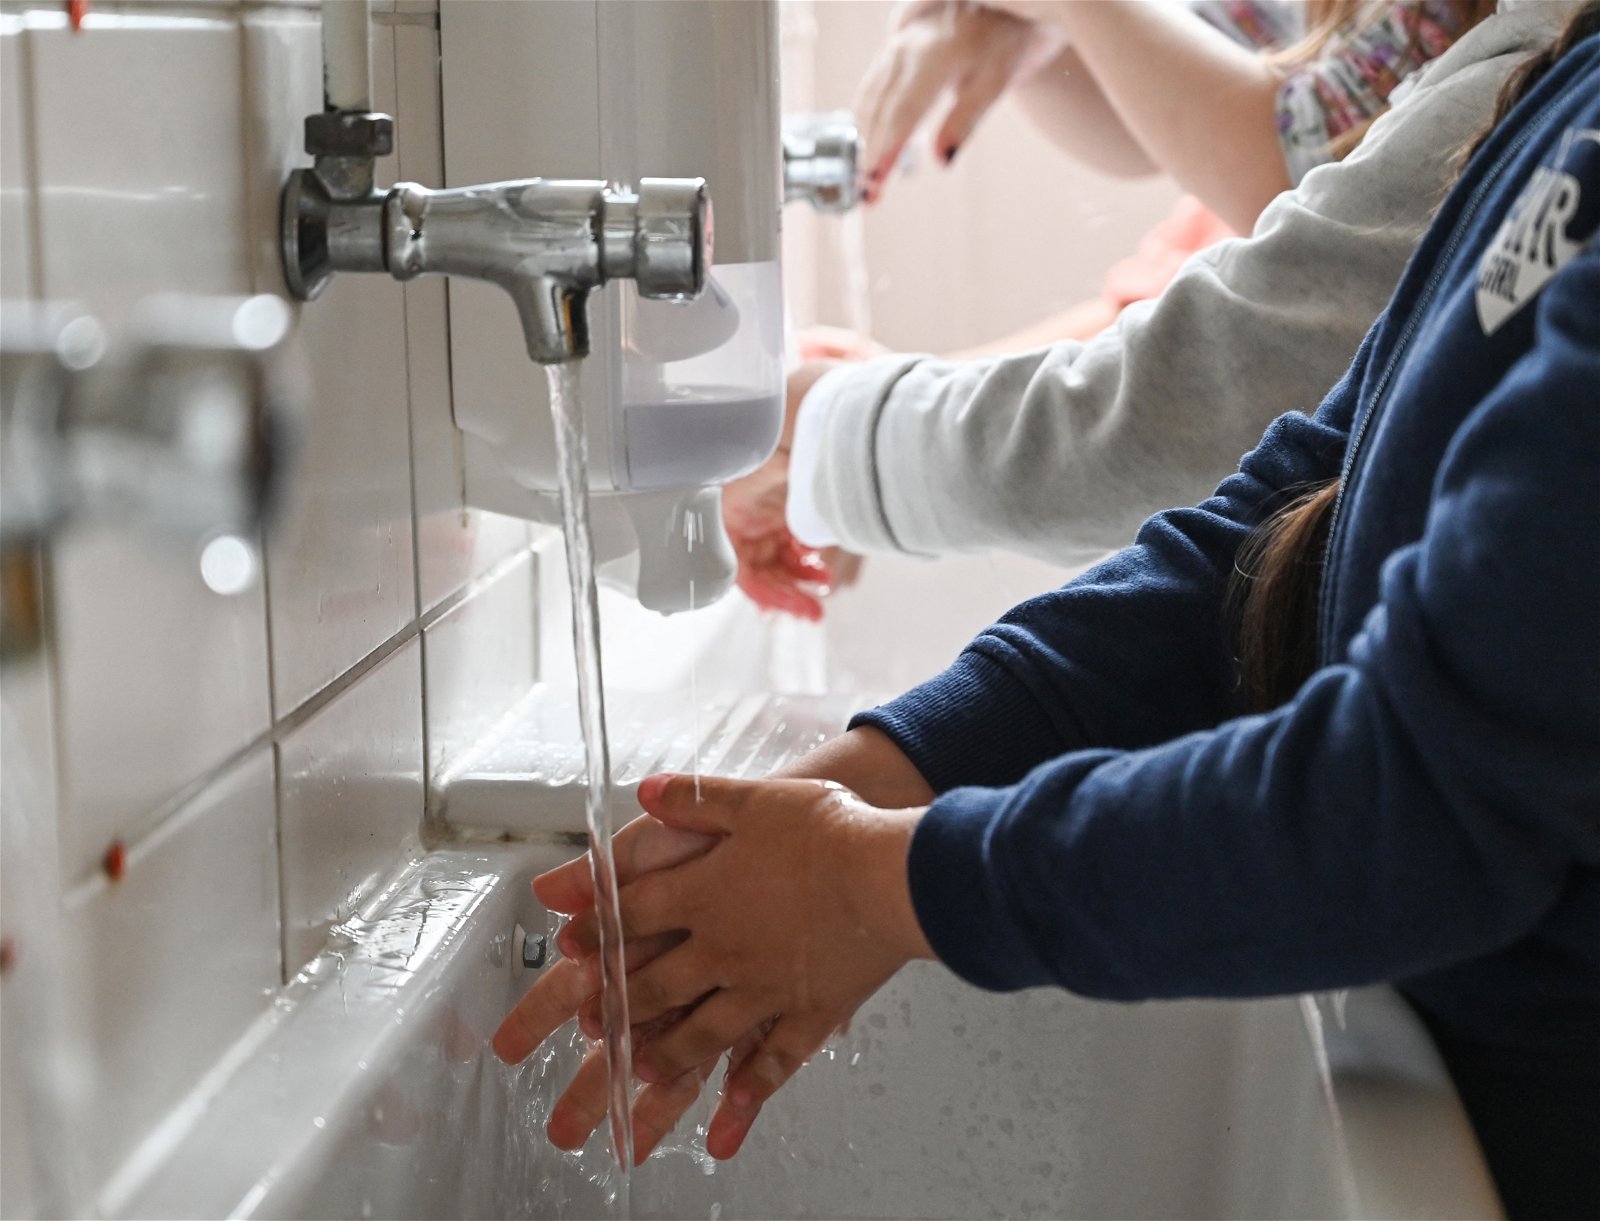 مراكز السيطرة على الأمراض تحدث إرشادات غسل اليدين للوقاية من كورونا